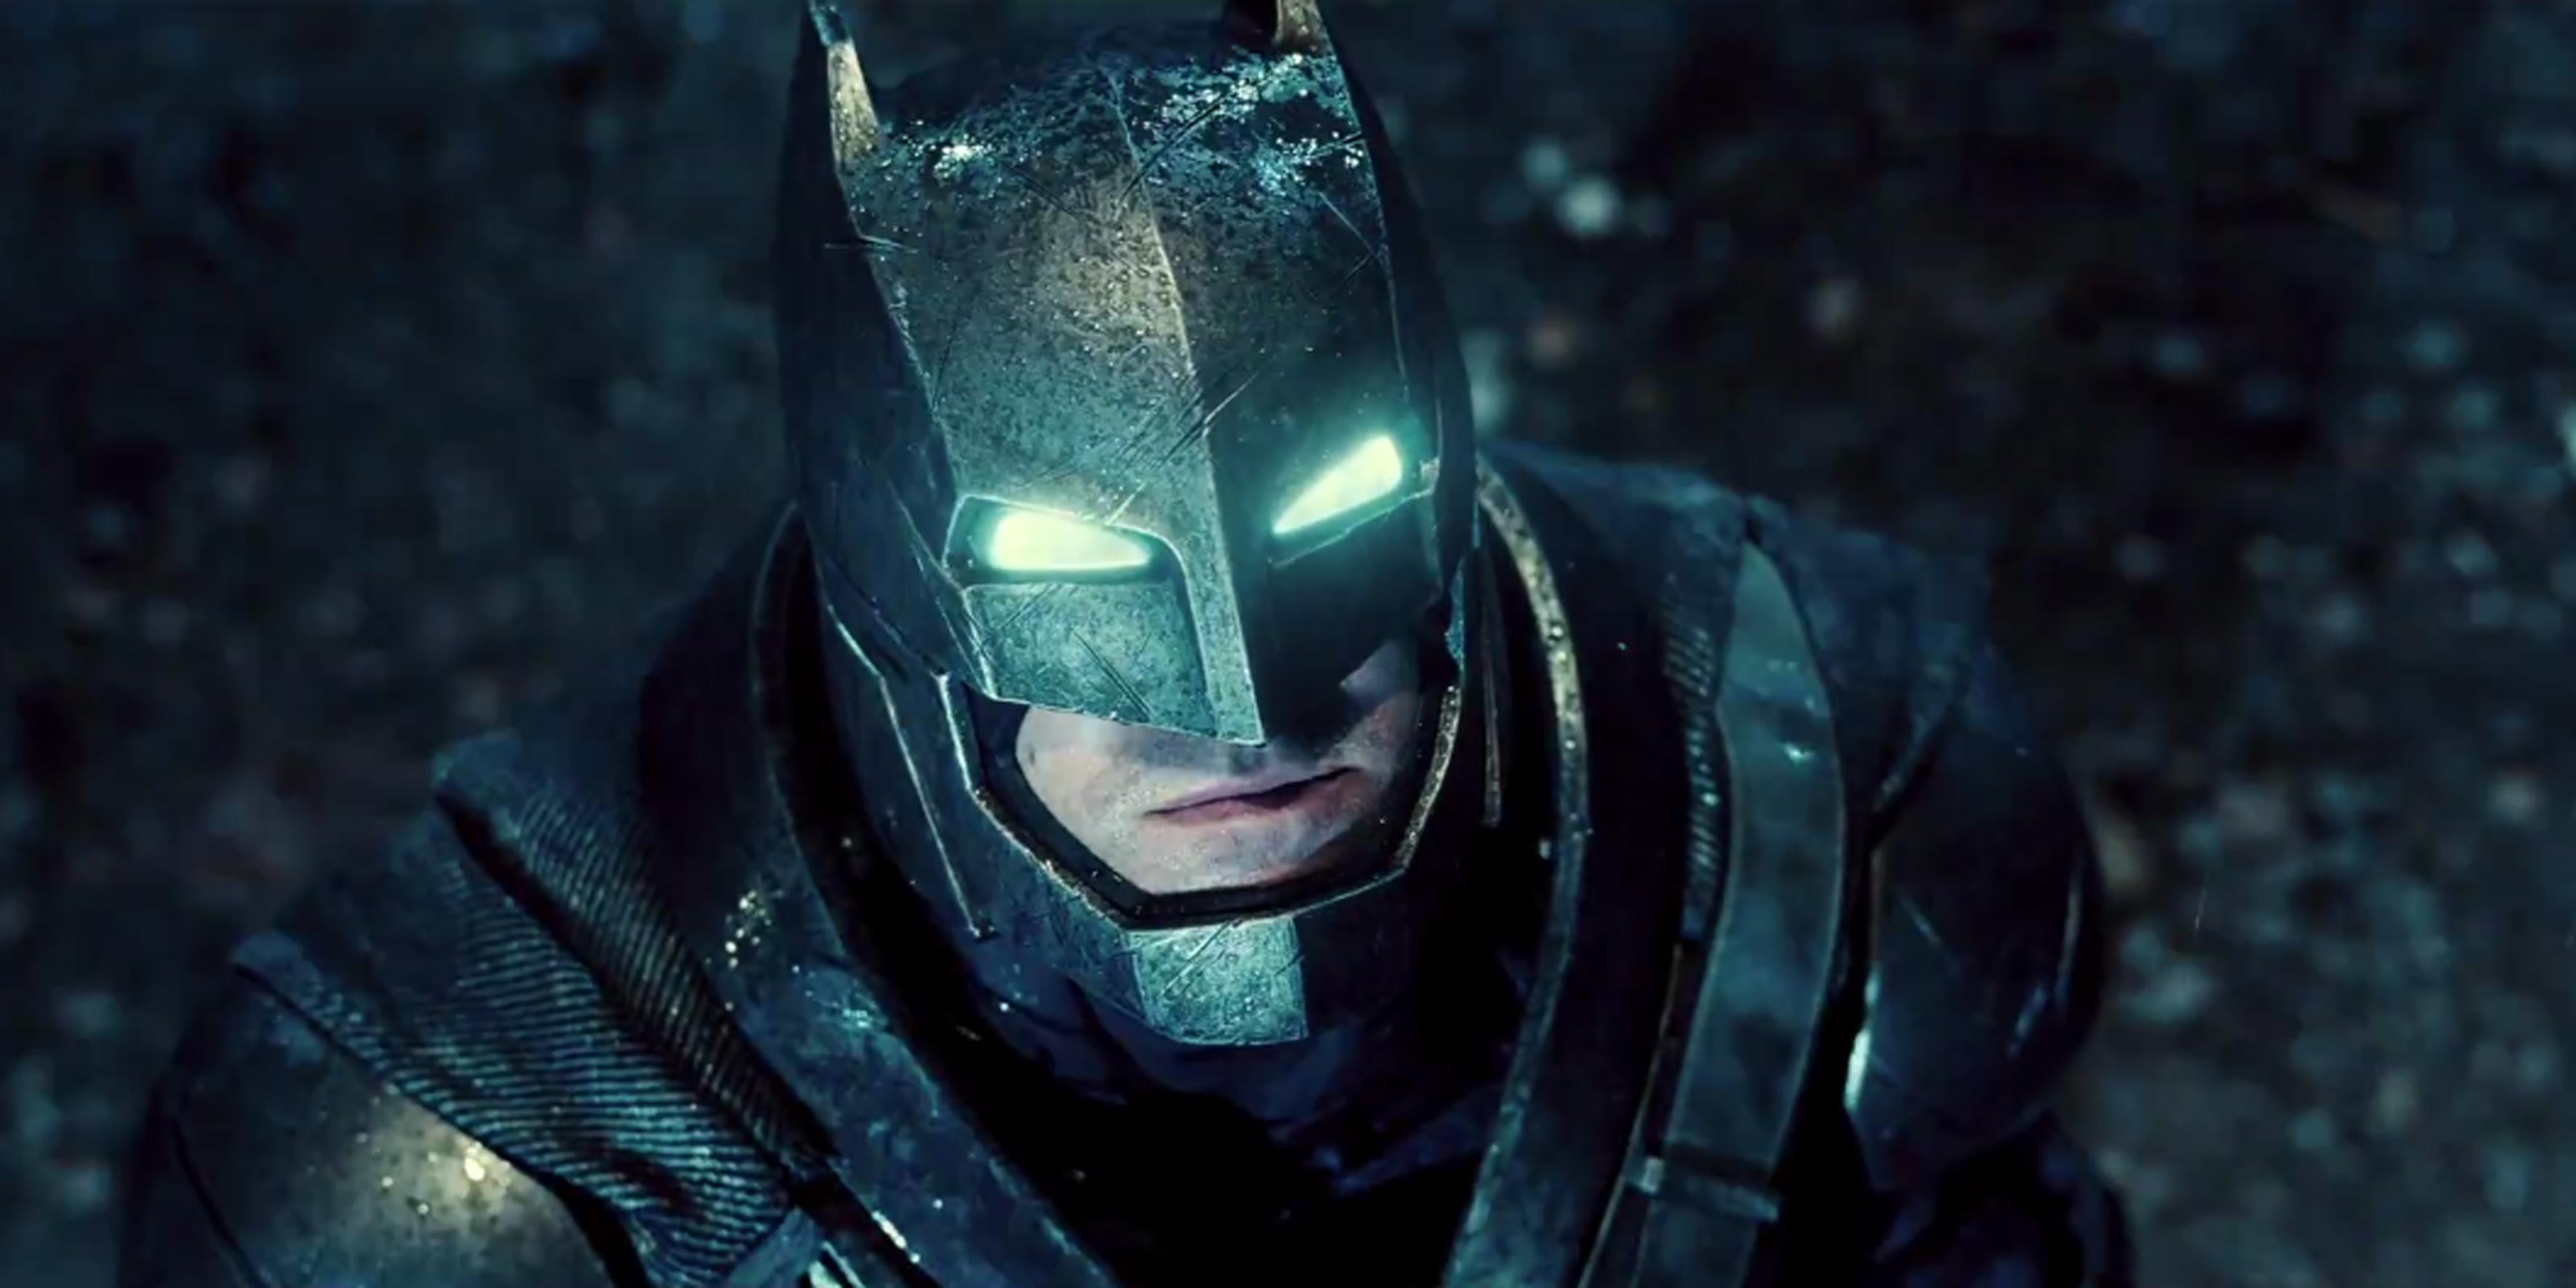 Ben Affleck's Batman Start Date: Shooting Begins in 2017